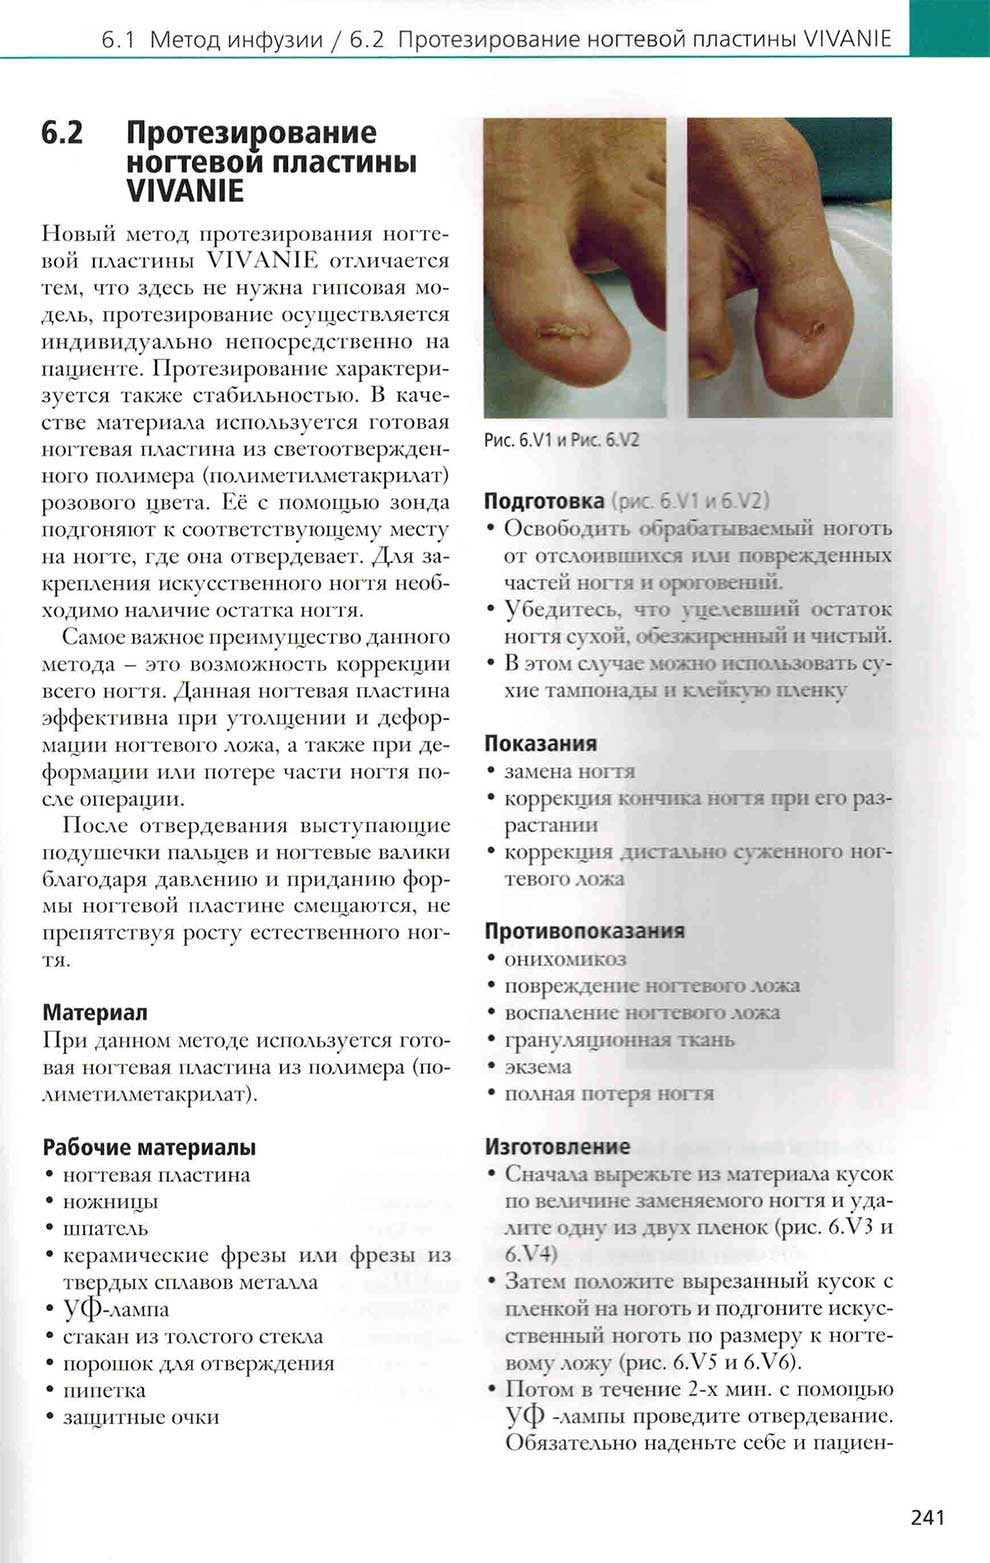 Протезирование ногтевой пластины VIVANIE